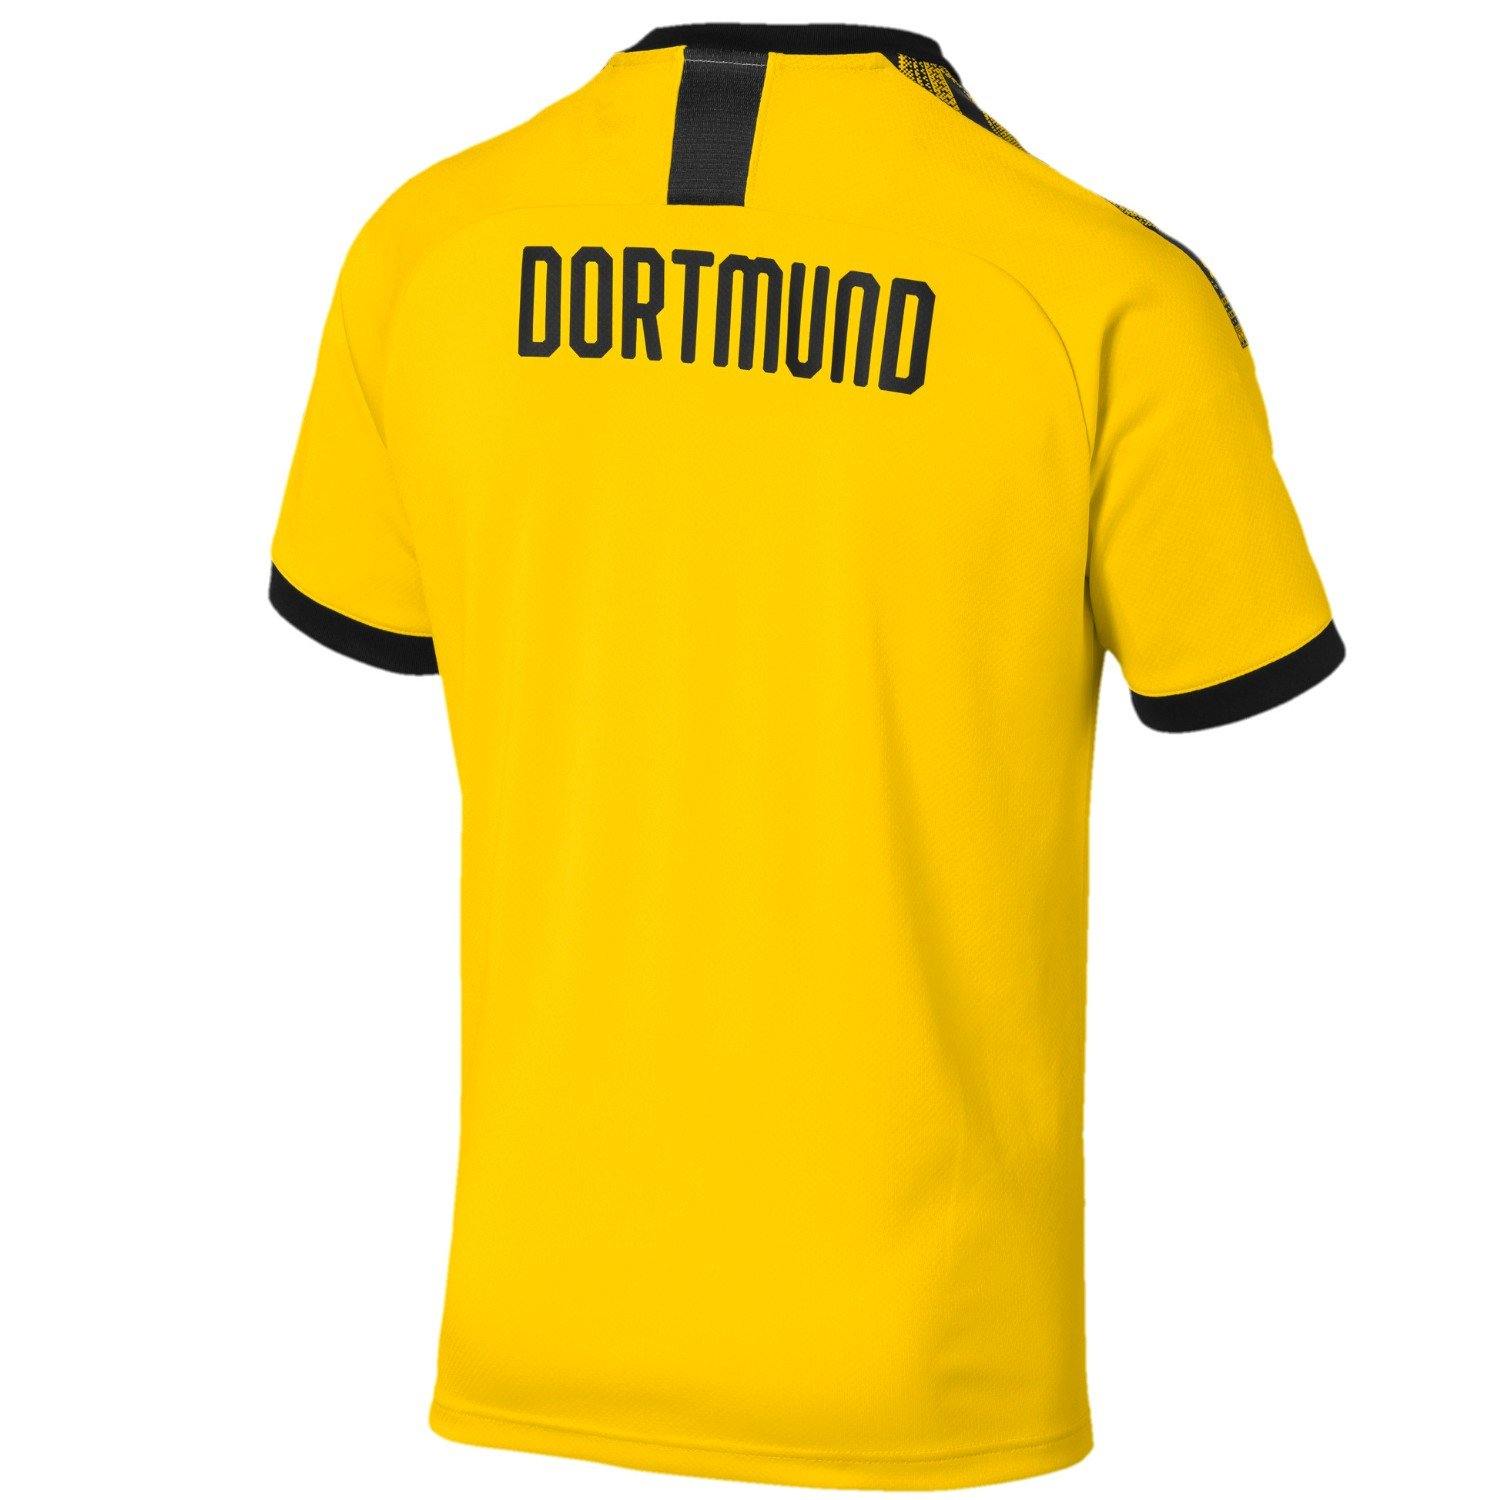 BVB Borussia Dortmund Home jersey - Puma – SoccerTracksuits.com